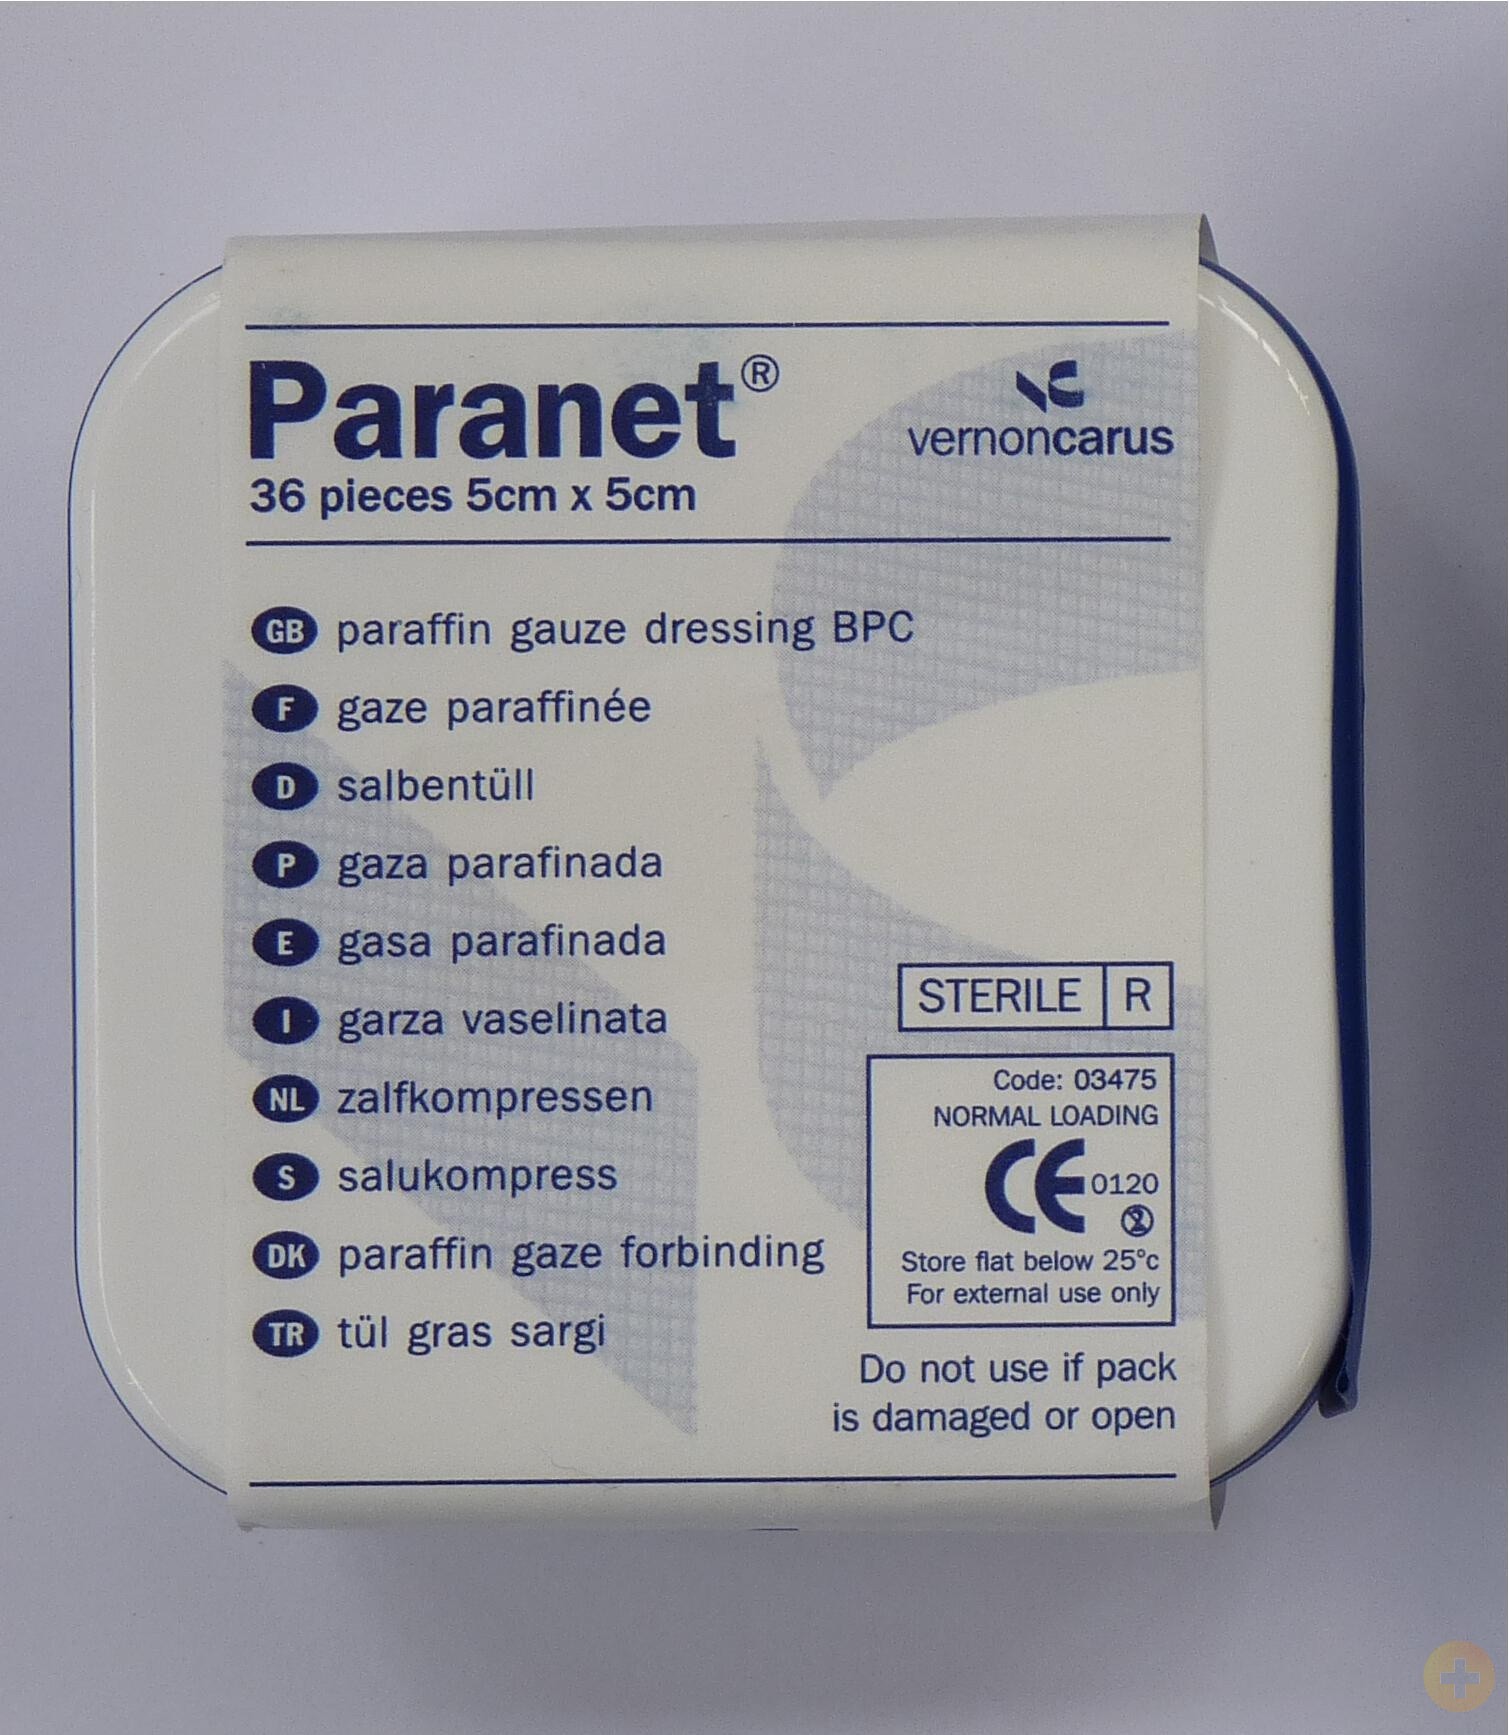 Paranet Paraffin Gauze Dressing 5cm x 5cm